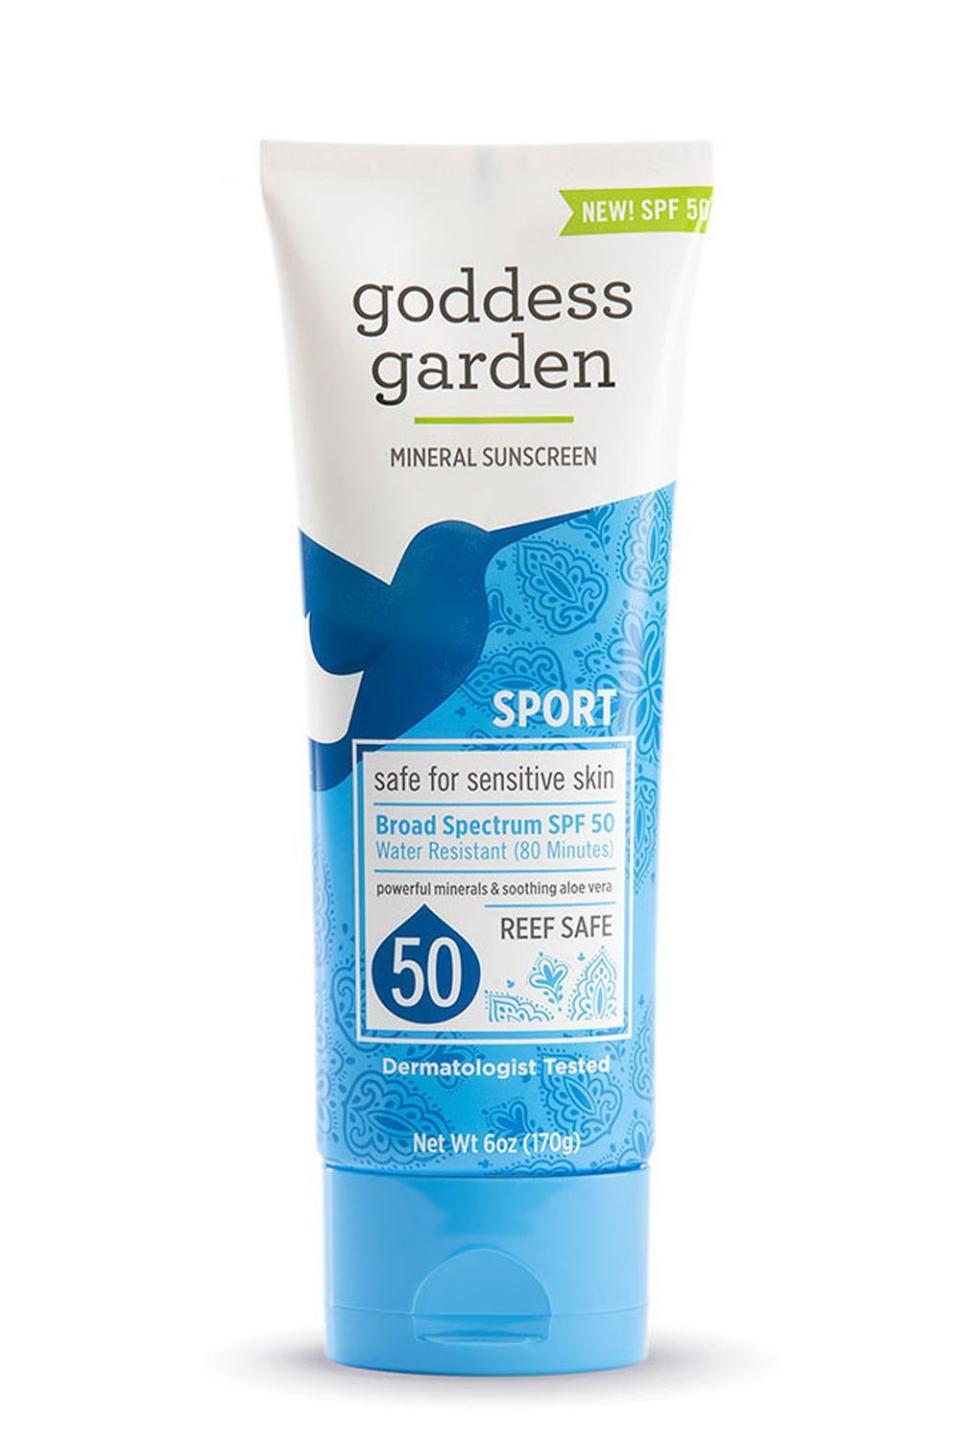 7) Goddess Garden Mineral Sunscreen SPF 50